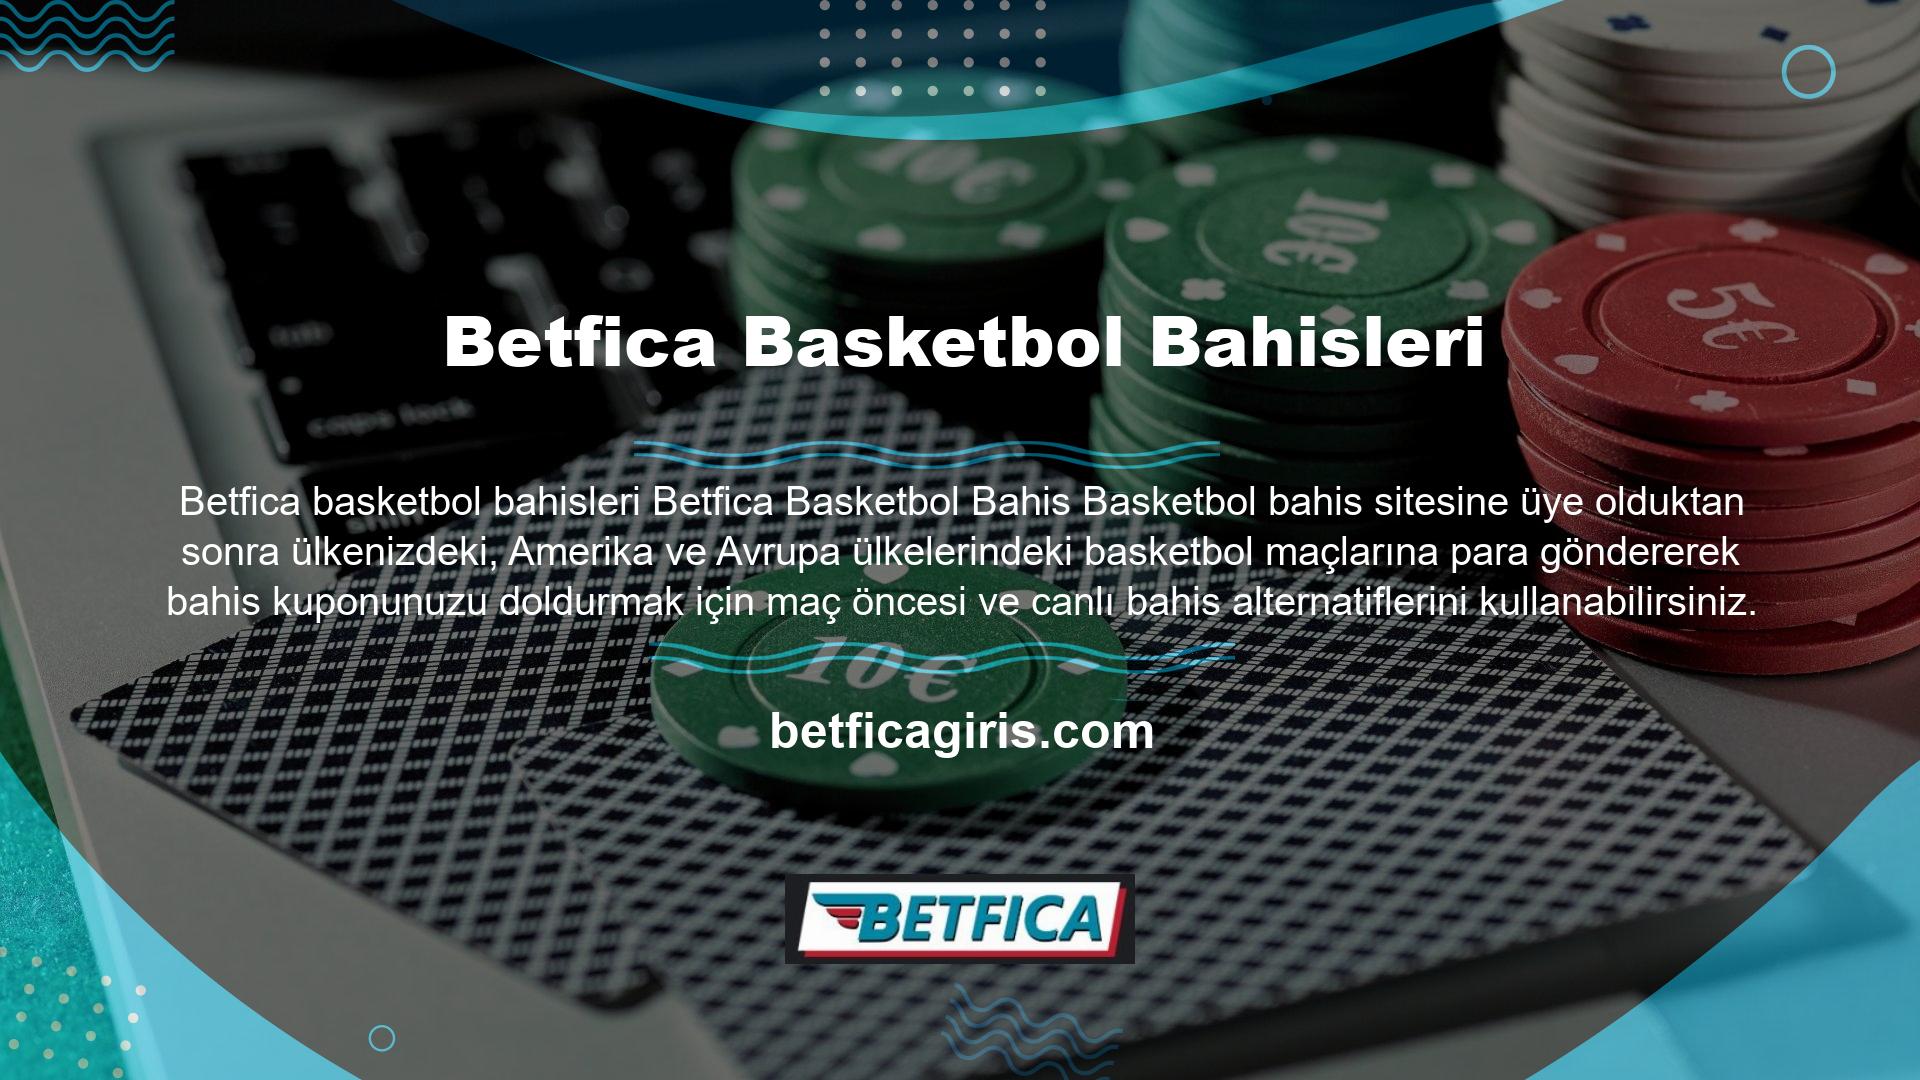 Basketbol bahisleri aracılığıyla Betfica bahis sitesinde deneyimlenen en yüksek tutarı kullanarak Betfica Casino/Canlı Casino'daki yatırımınıza çeşitli bonuslar kazandırabilirsiniz